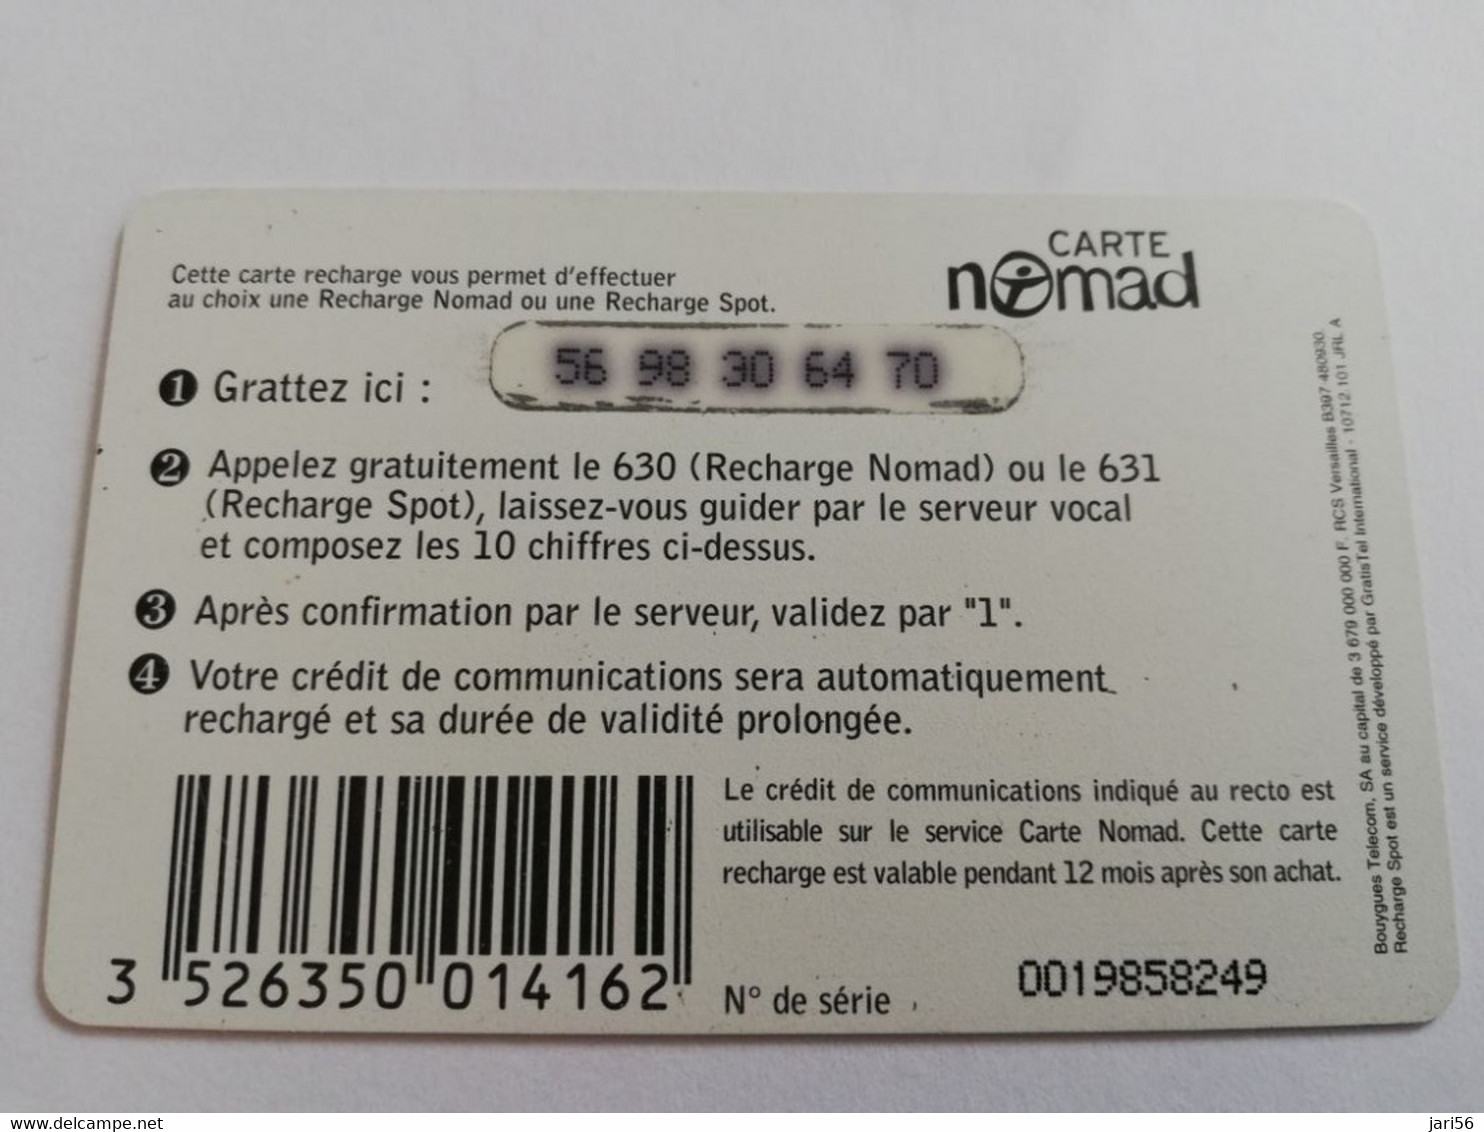 FRANCE/FRANKRIJK  NOMAD CARTE  SMALL NOMAD OU SPOT    95FR  PREPAID  USED    ** 9437** - Mobicartes (GSM/SIM)